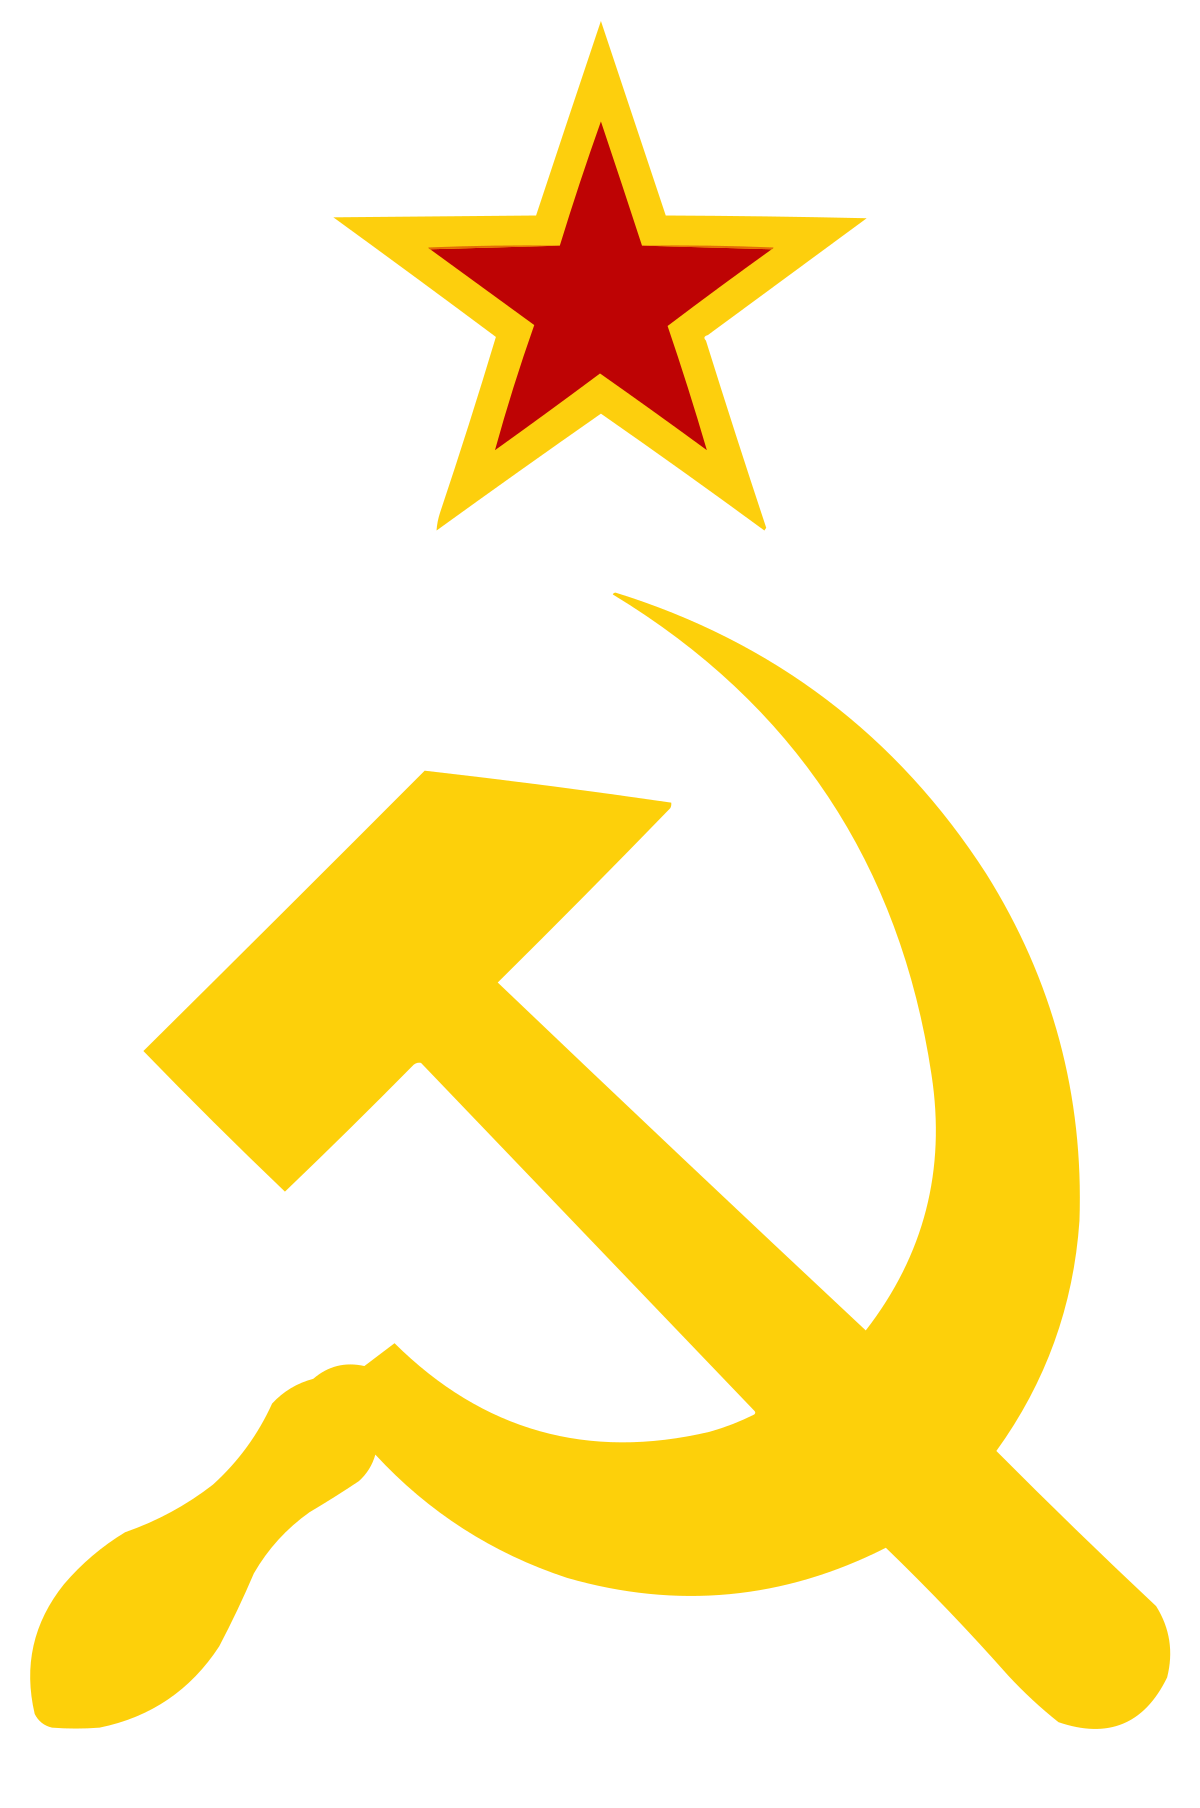 Soviet Symbol - KibrisPDR